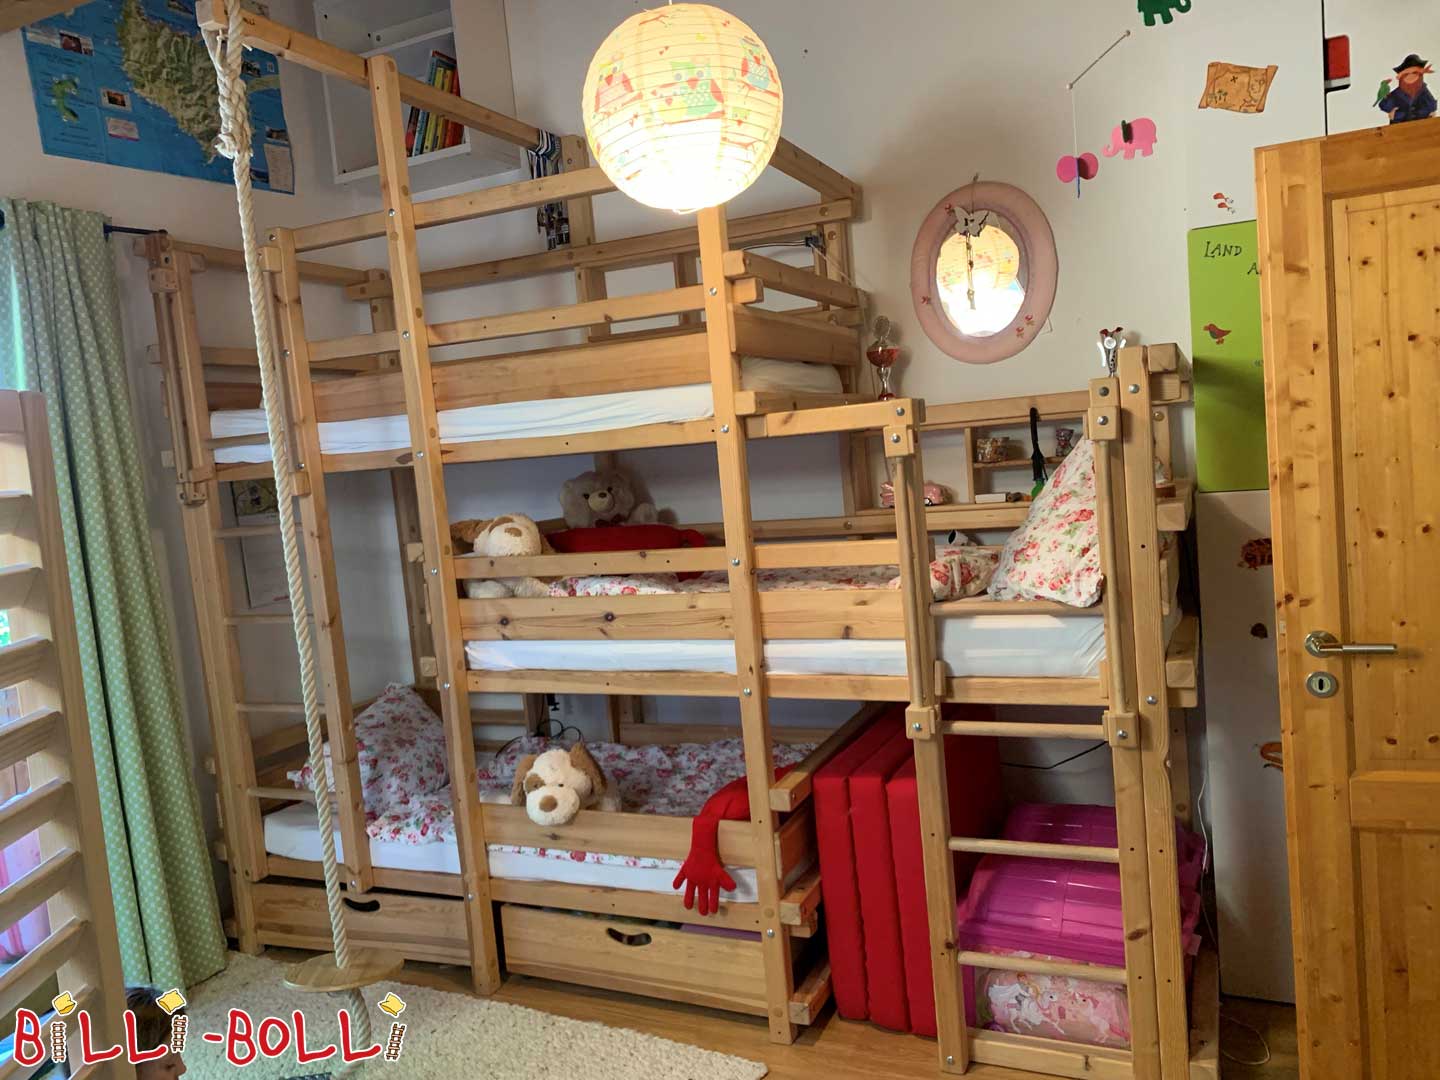 Τρίκλινο κρεβάτι, 190 x 90 cm (Κατηγορία: Παιδικά έπιπλα που χρησιμοποιούνται)